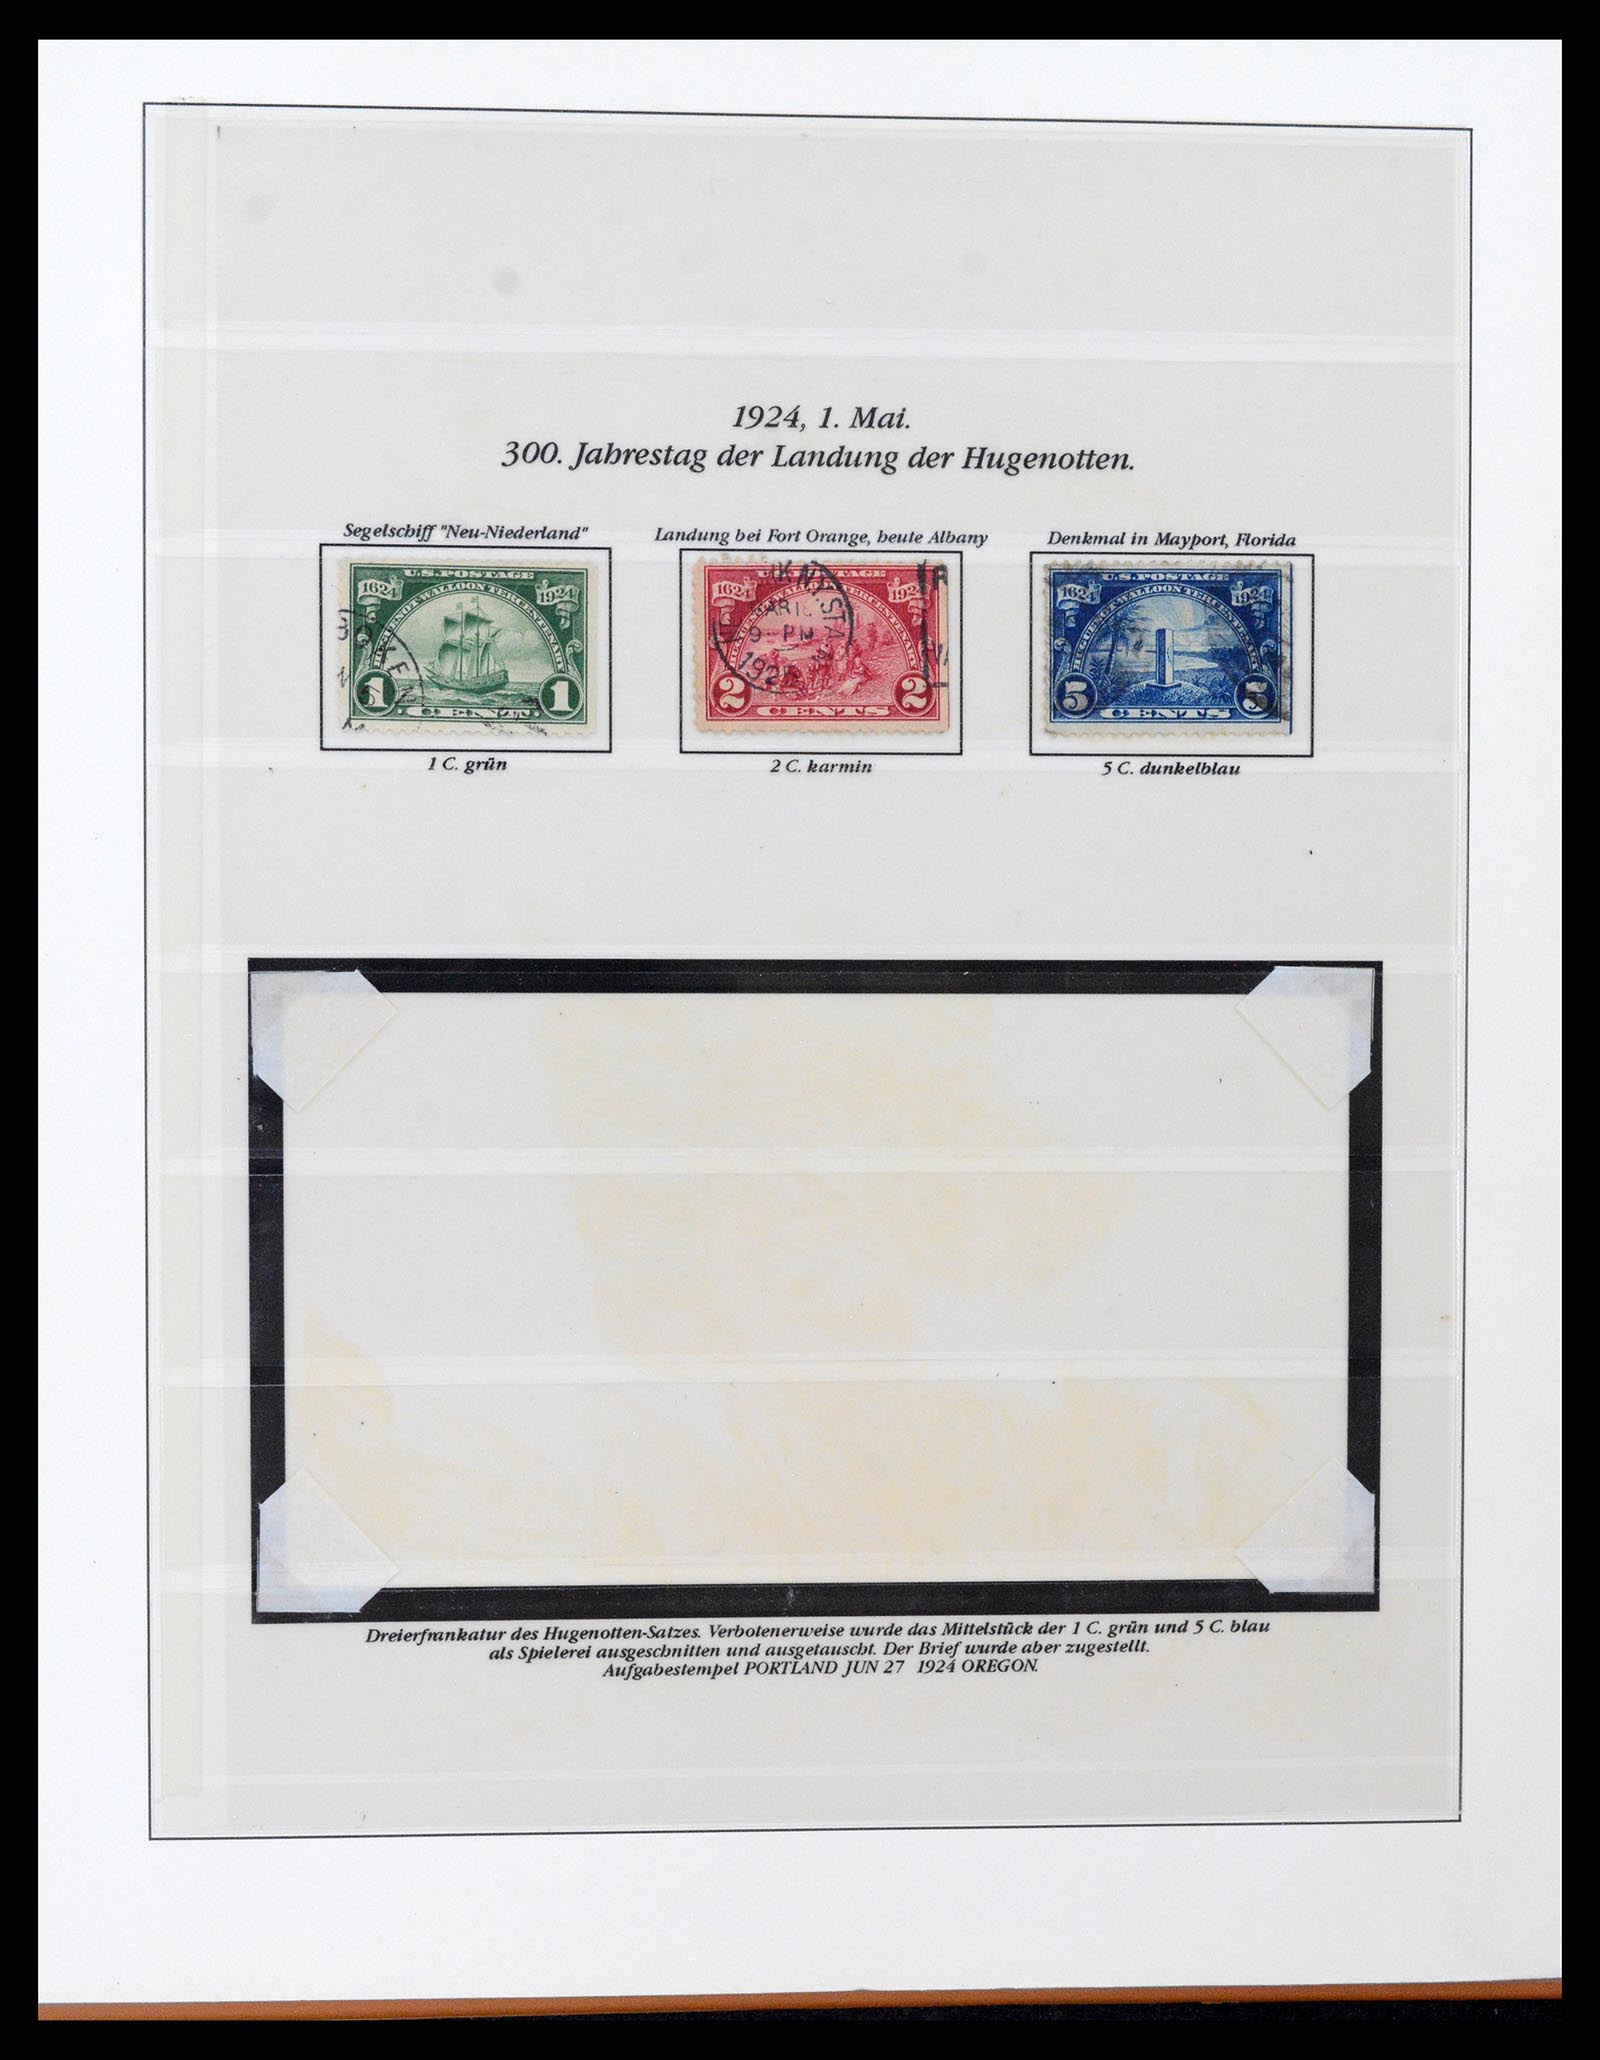 37653 069 - Stamp collection 37653 USA 1870-1954.